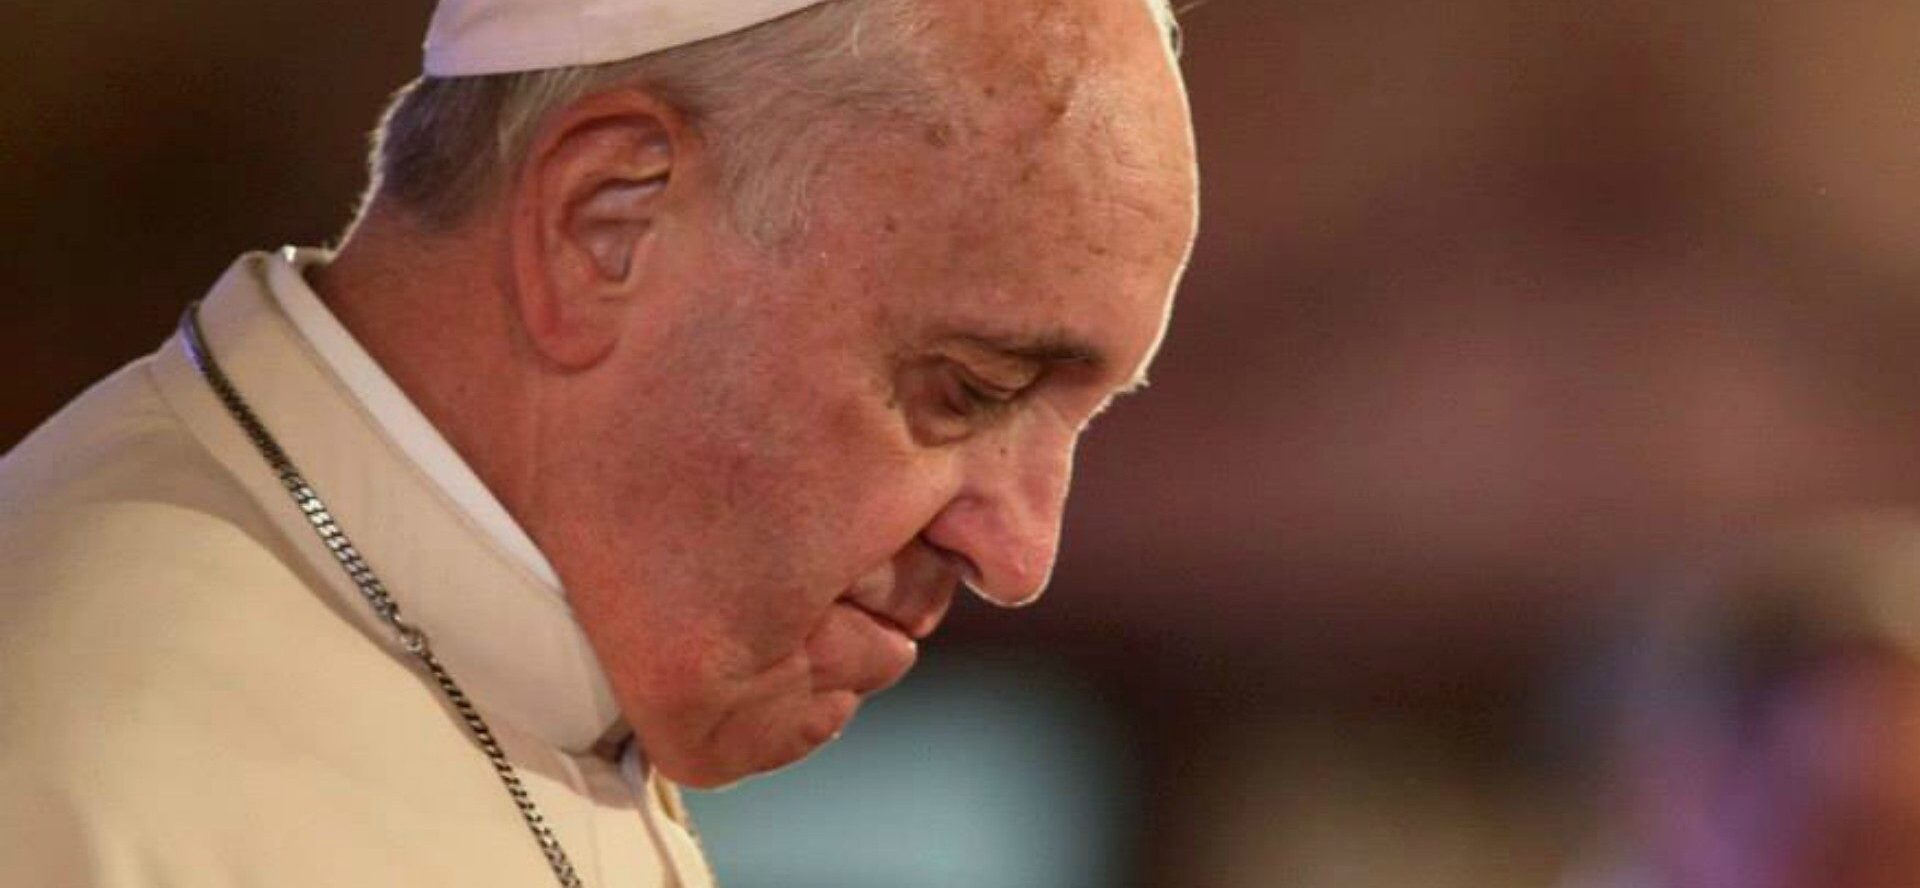 Le pape a exprimé sa compassion pour les victimes de l'attentat de Kasindi, en RDC | © Wikimedia Commons